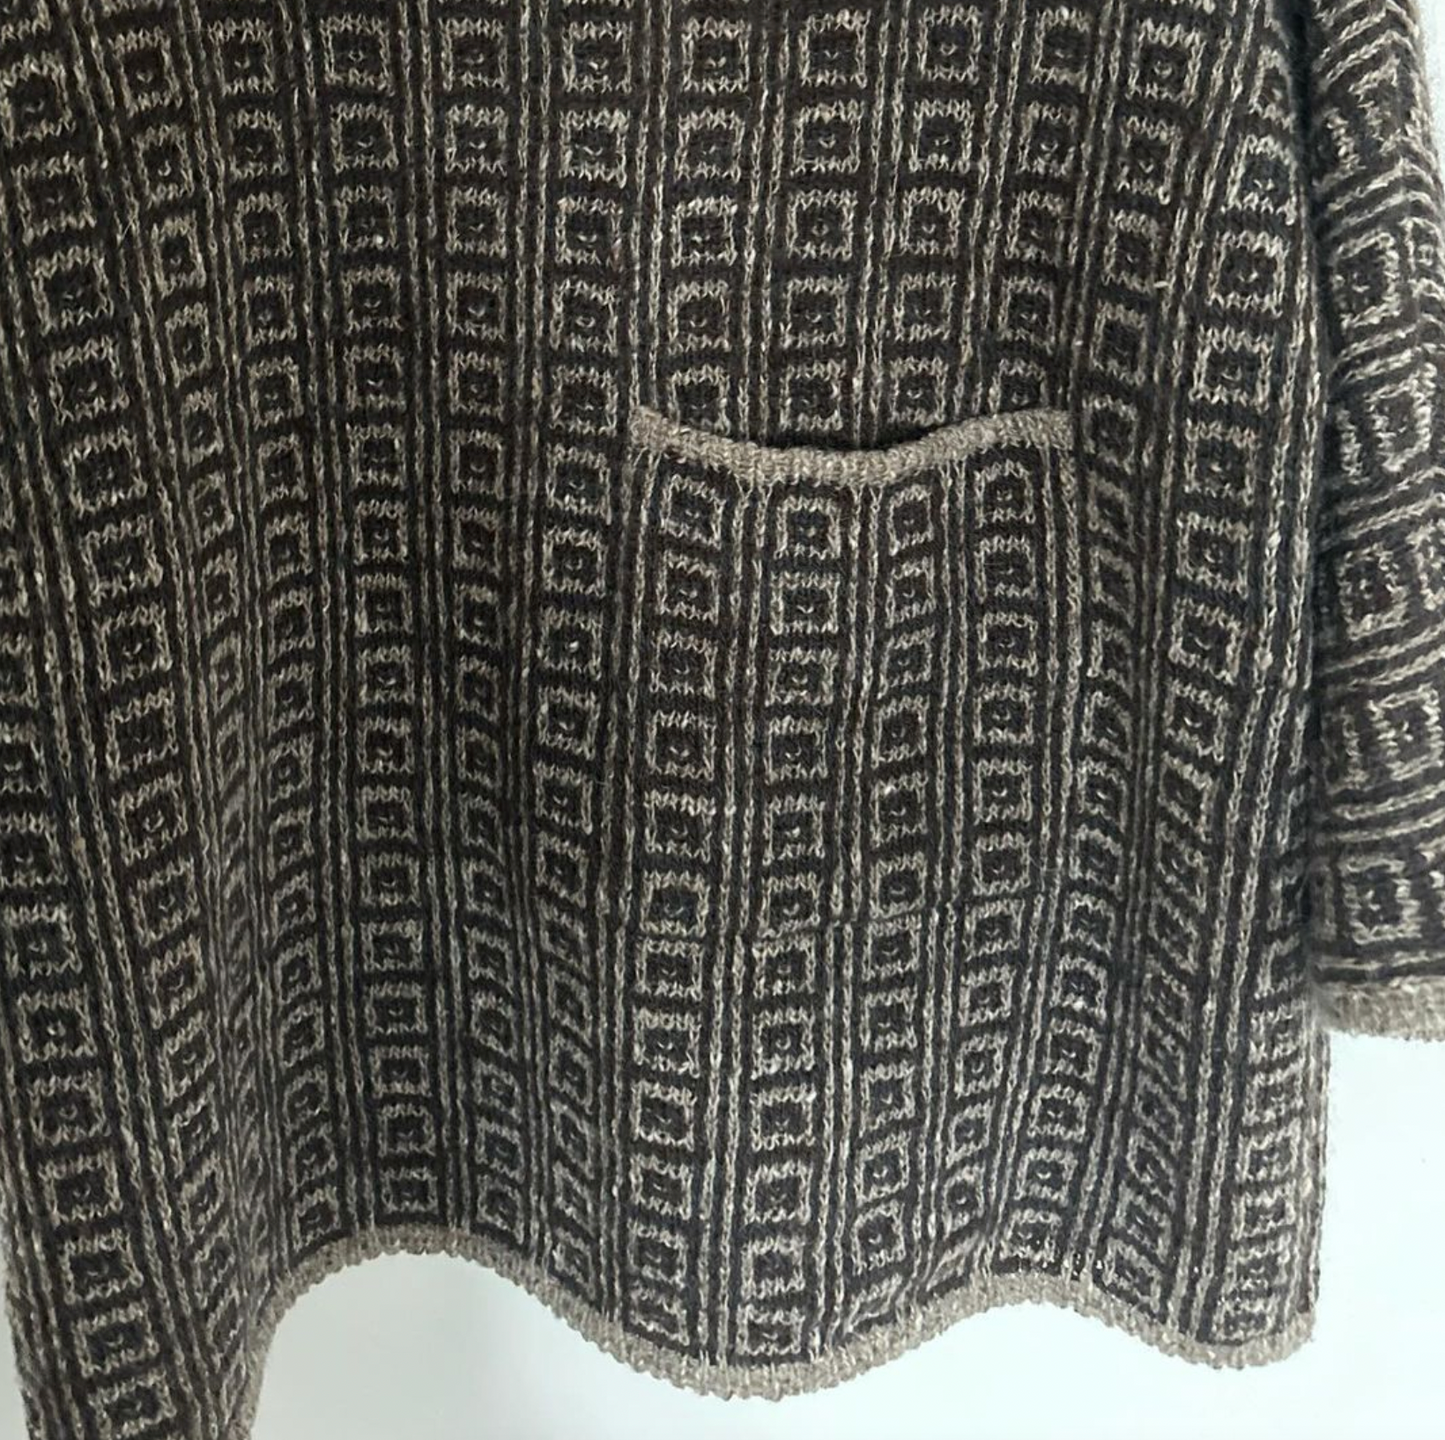 Sweater 4 (dansk)